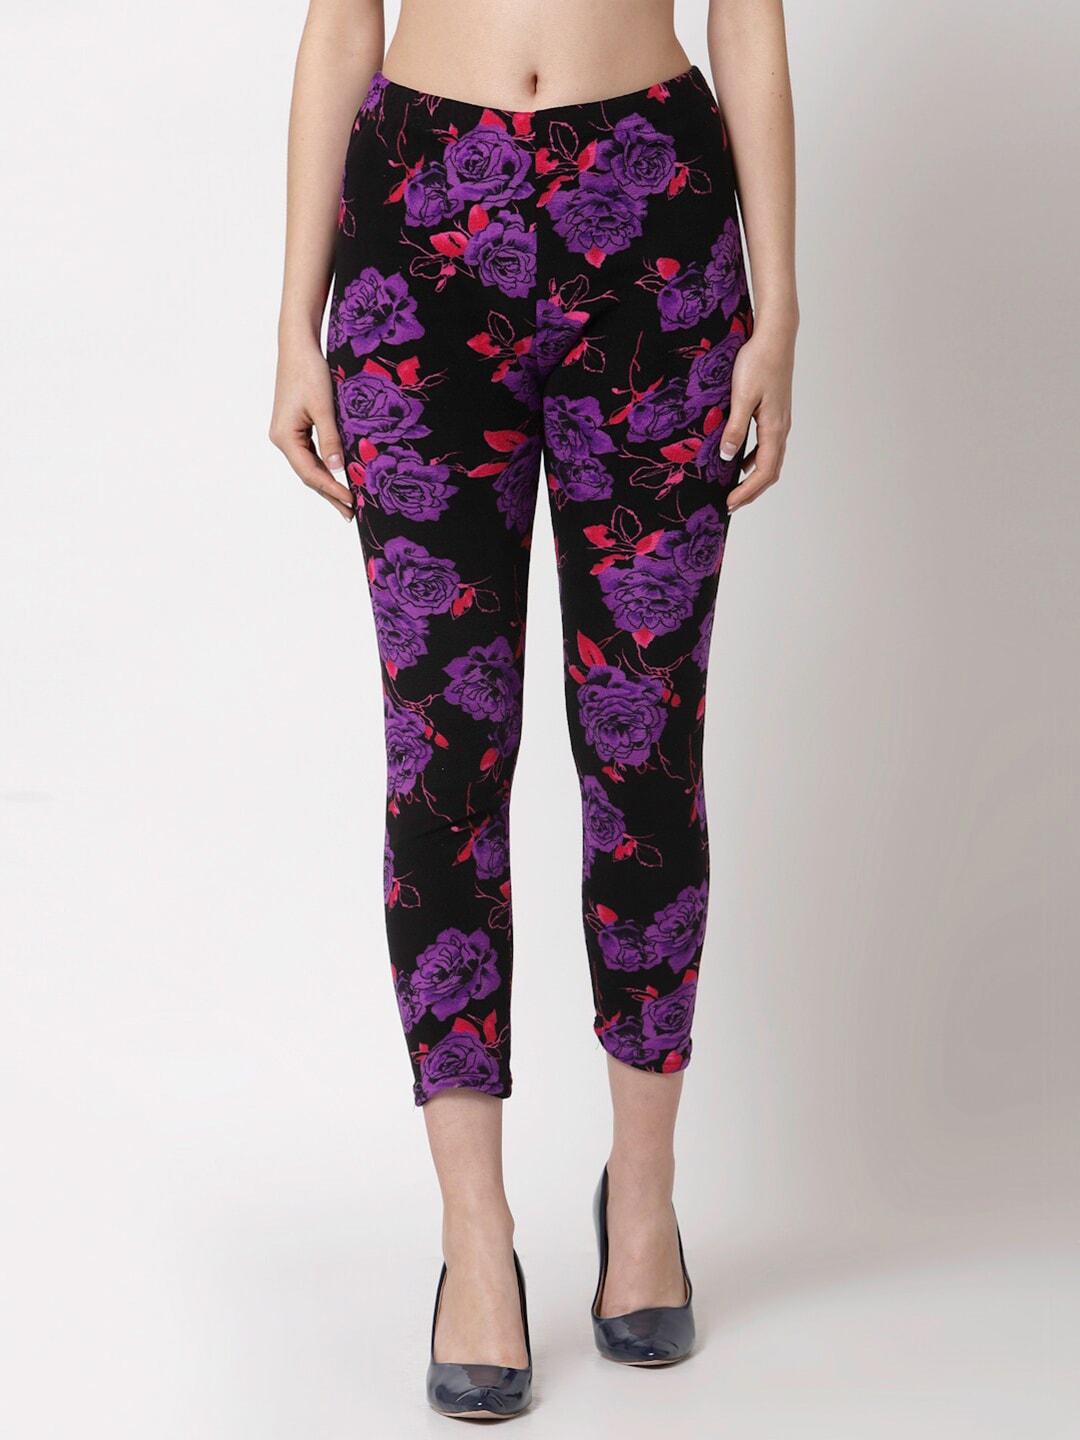 klotthe-women-black-&-purple-printed-skinny-fit-woolen-jeggings